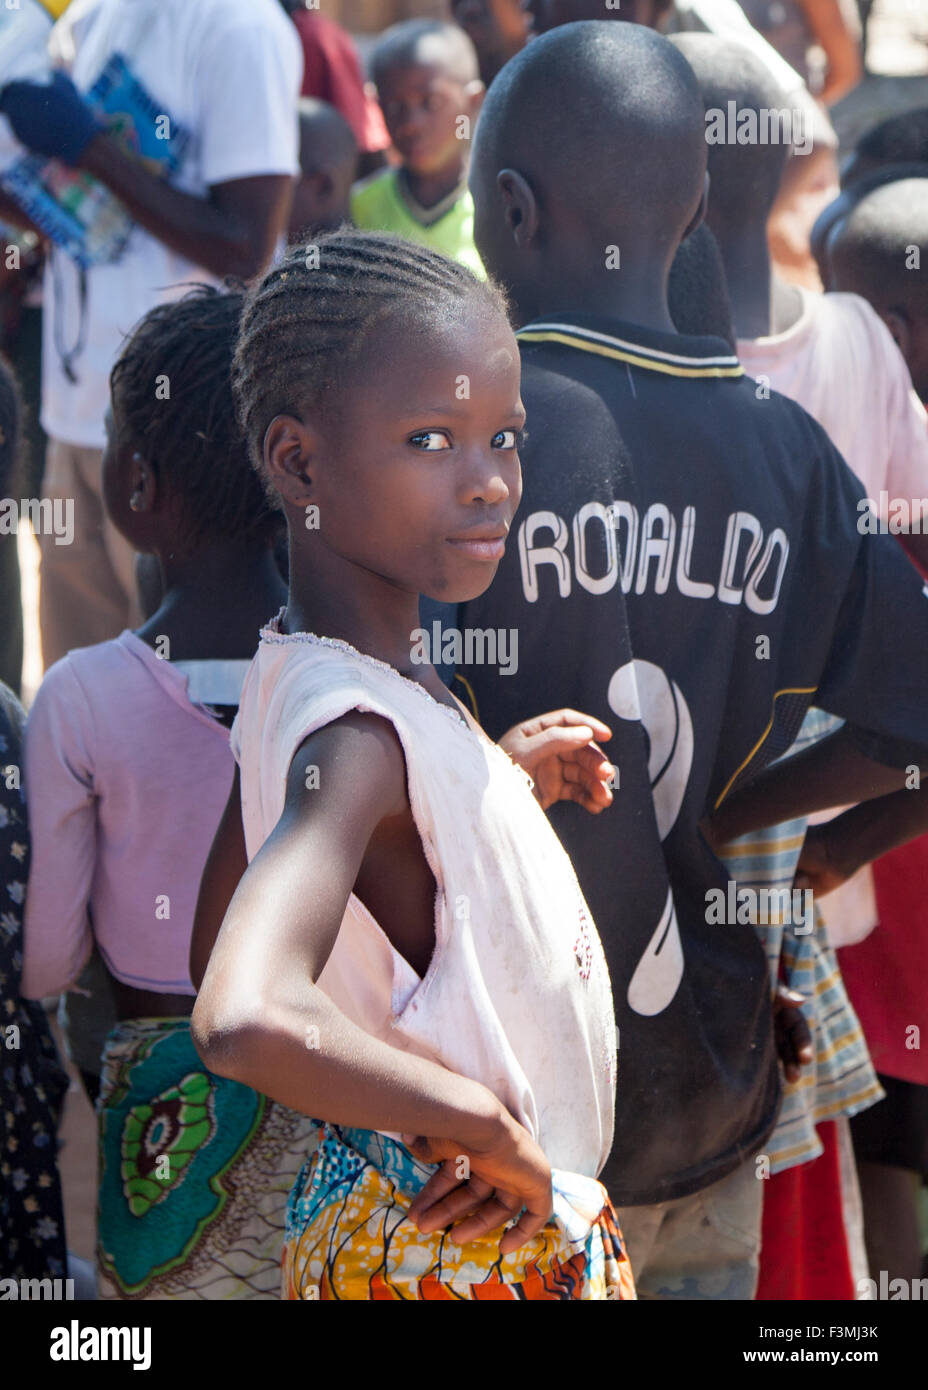 Giovane ragazza africana avente il divertimento a un incontro pubblico Foto Stock